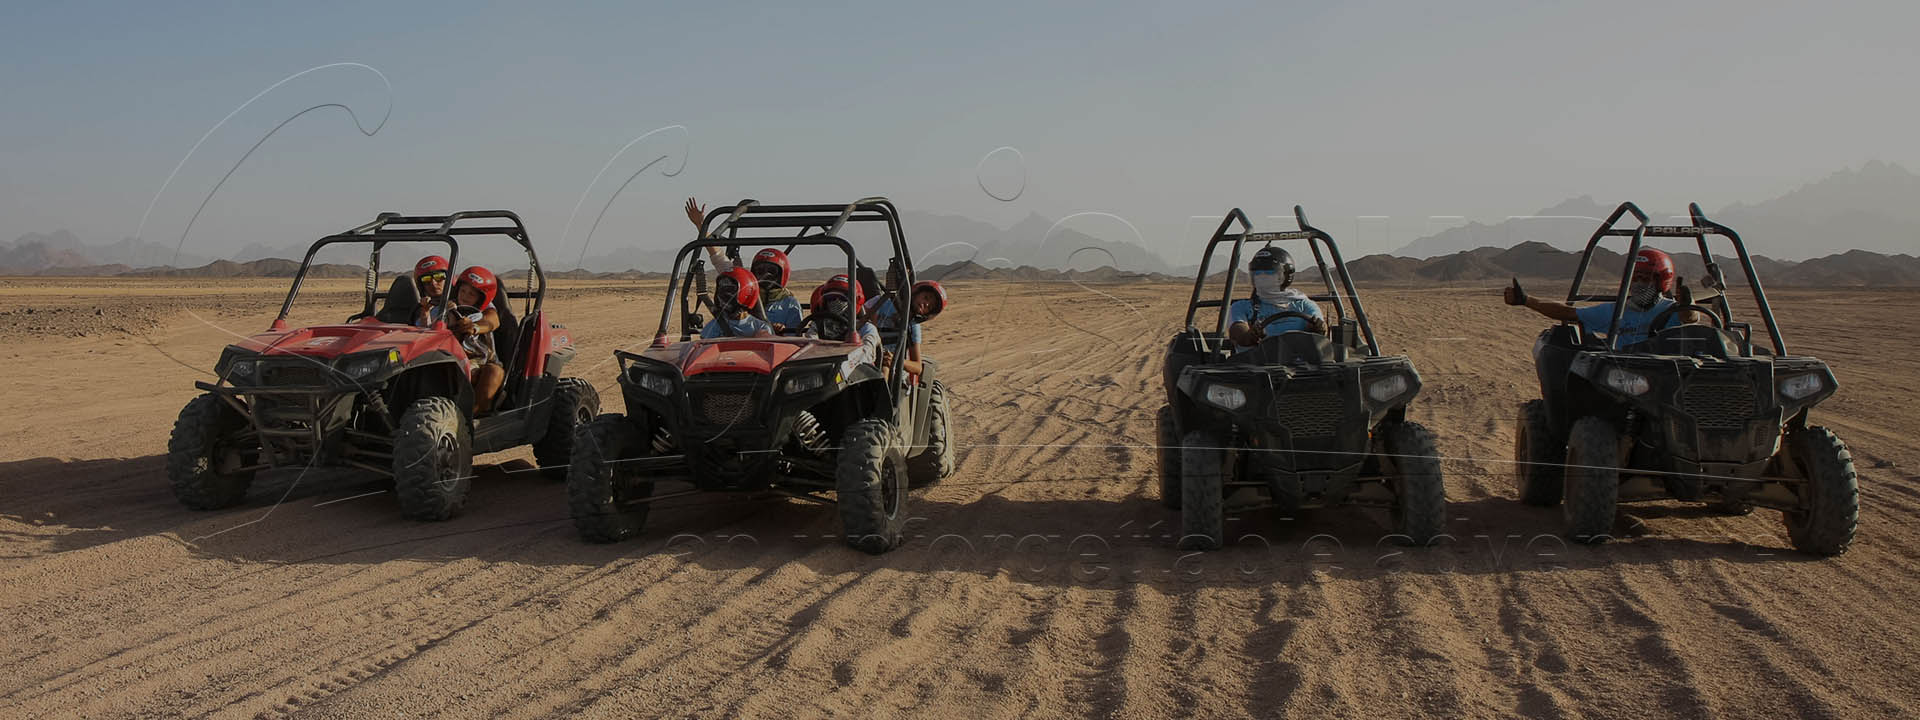 Сафари на багги по дюнам в Хургаде в парке Сахара